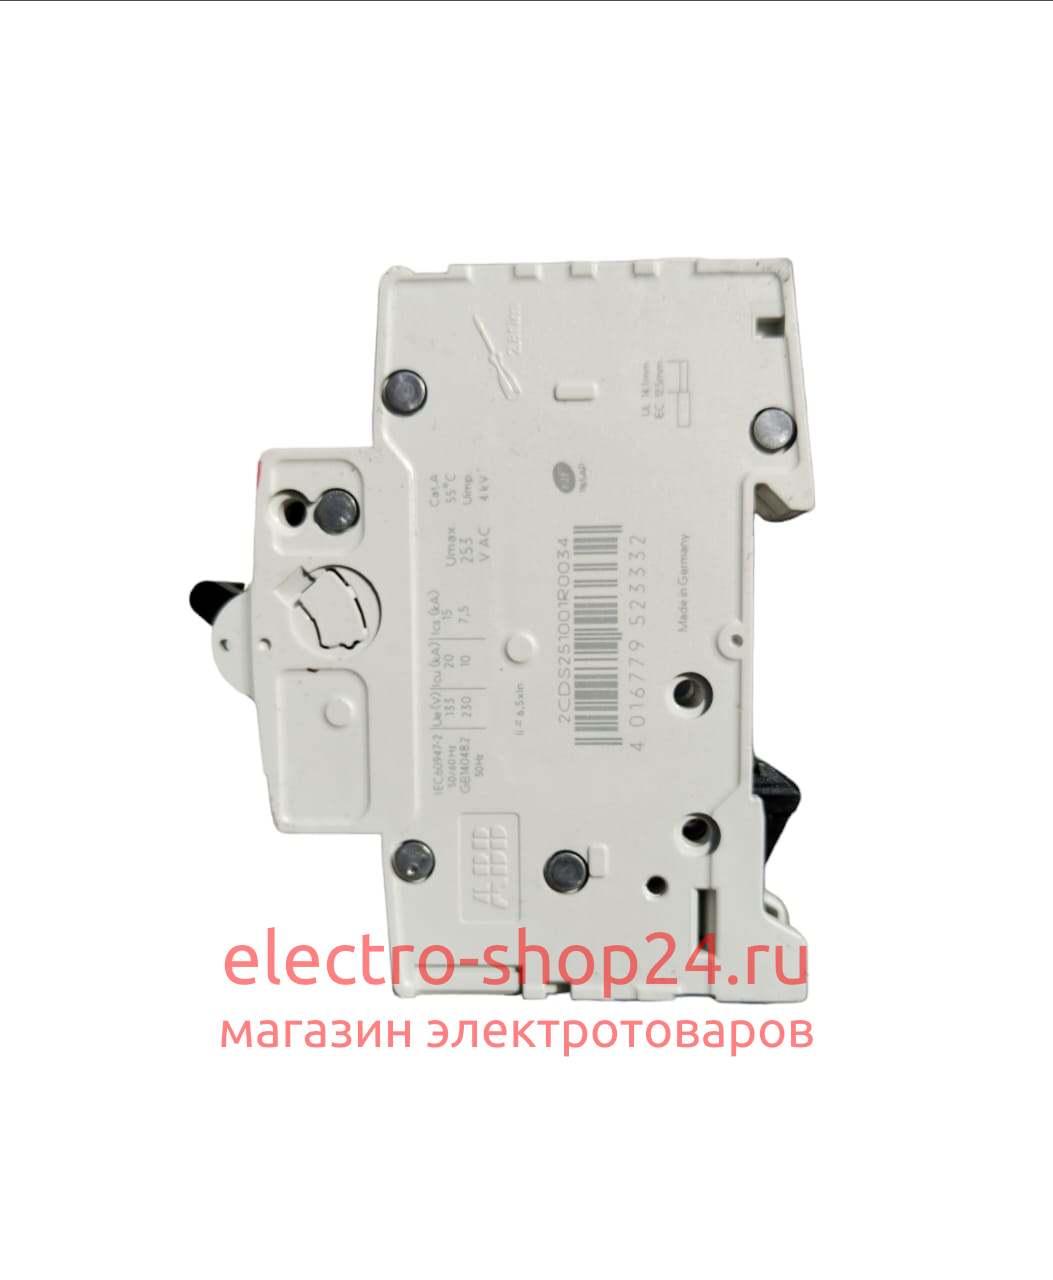 S201 C50 Автоматический выключатель 1-полюсный 50А 6кА (хар-ка C) ABB 2CDS251001R0504 2CDS251001R0504 - магазин электротехники Electroshop